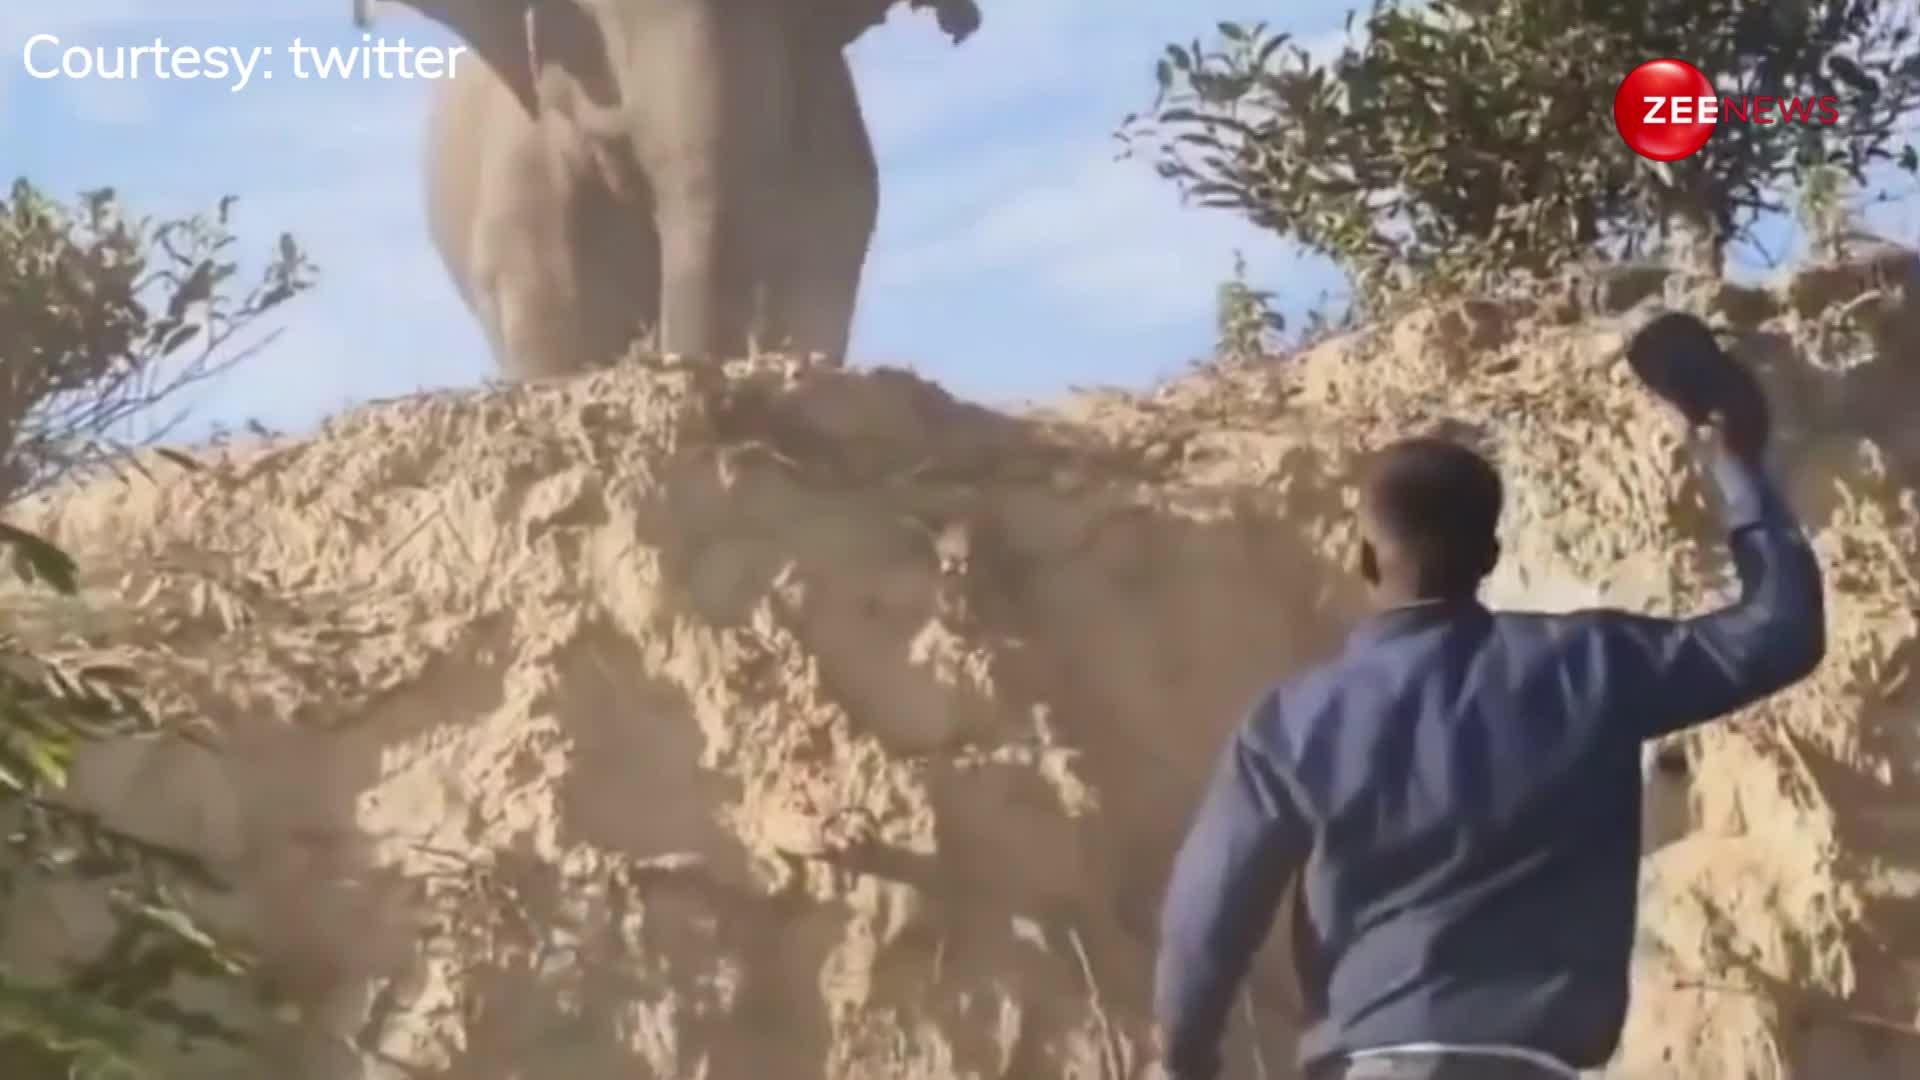 हाथी को चिड़ाना शख्स को पड़ा महंगा, जान बचाने को जंगल में लगाई दौड़; देखें ये वीडियो